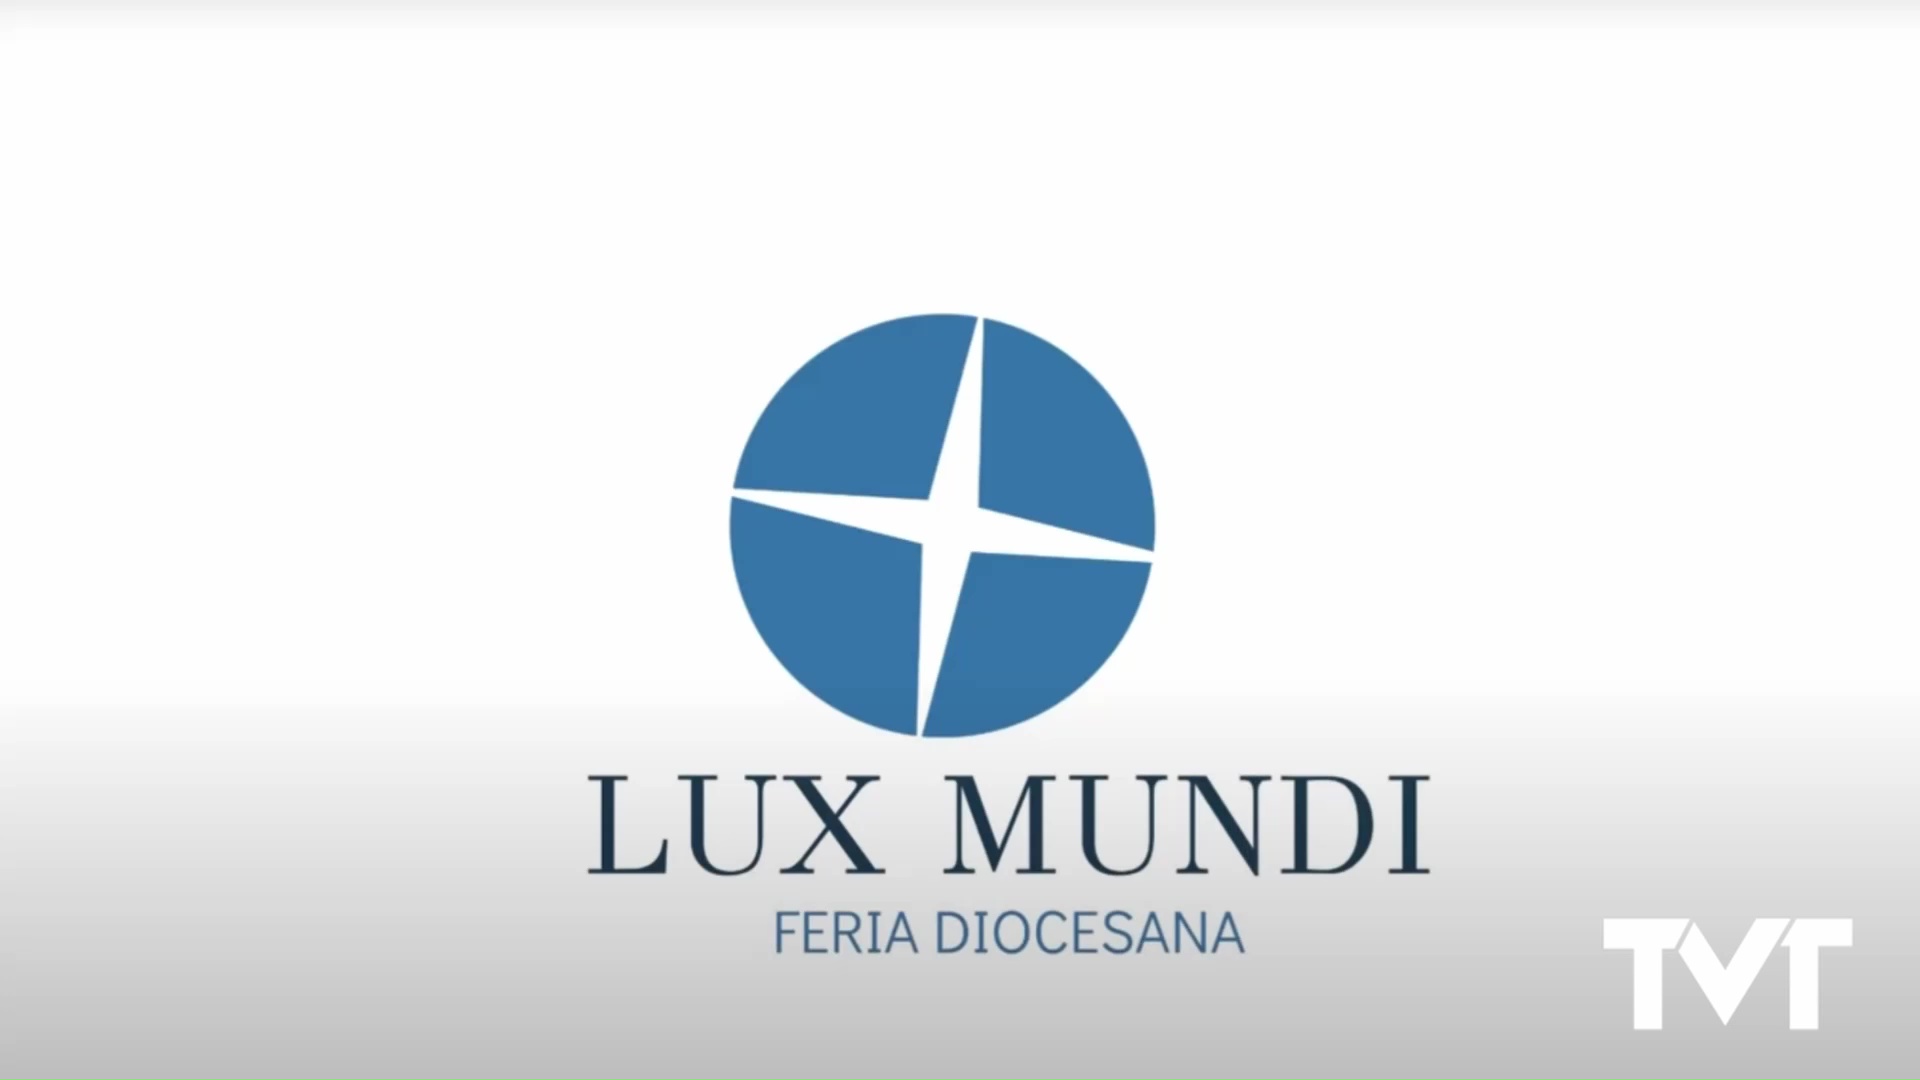 Feria Diocesana Lux Mundi